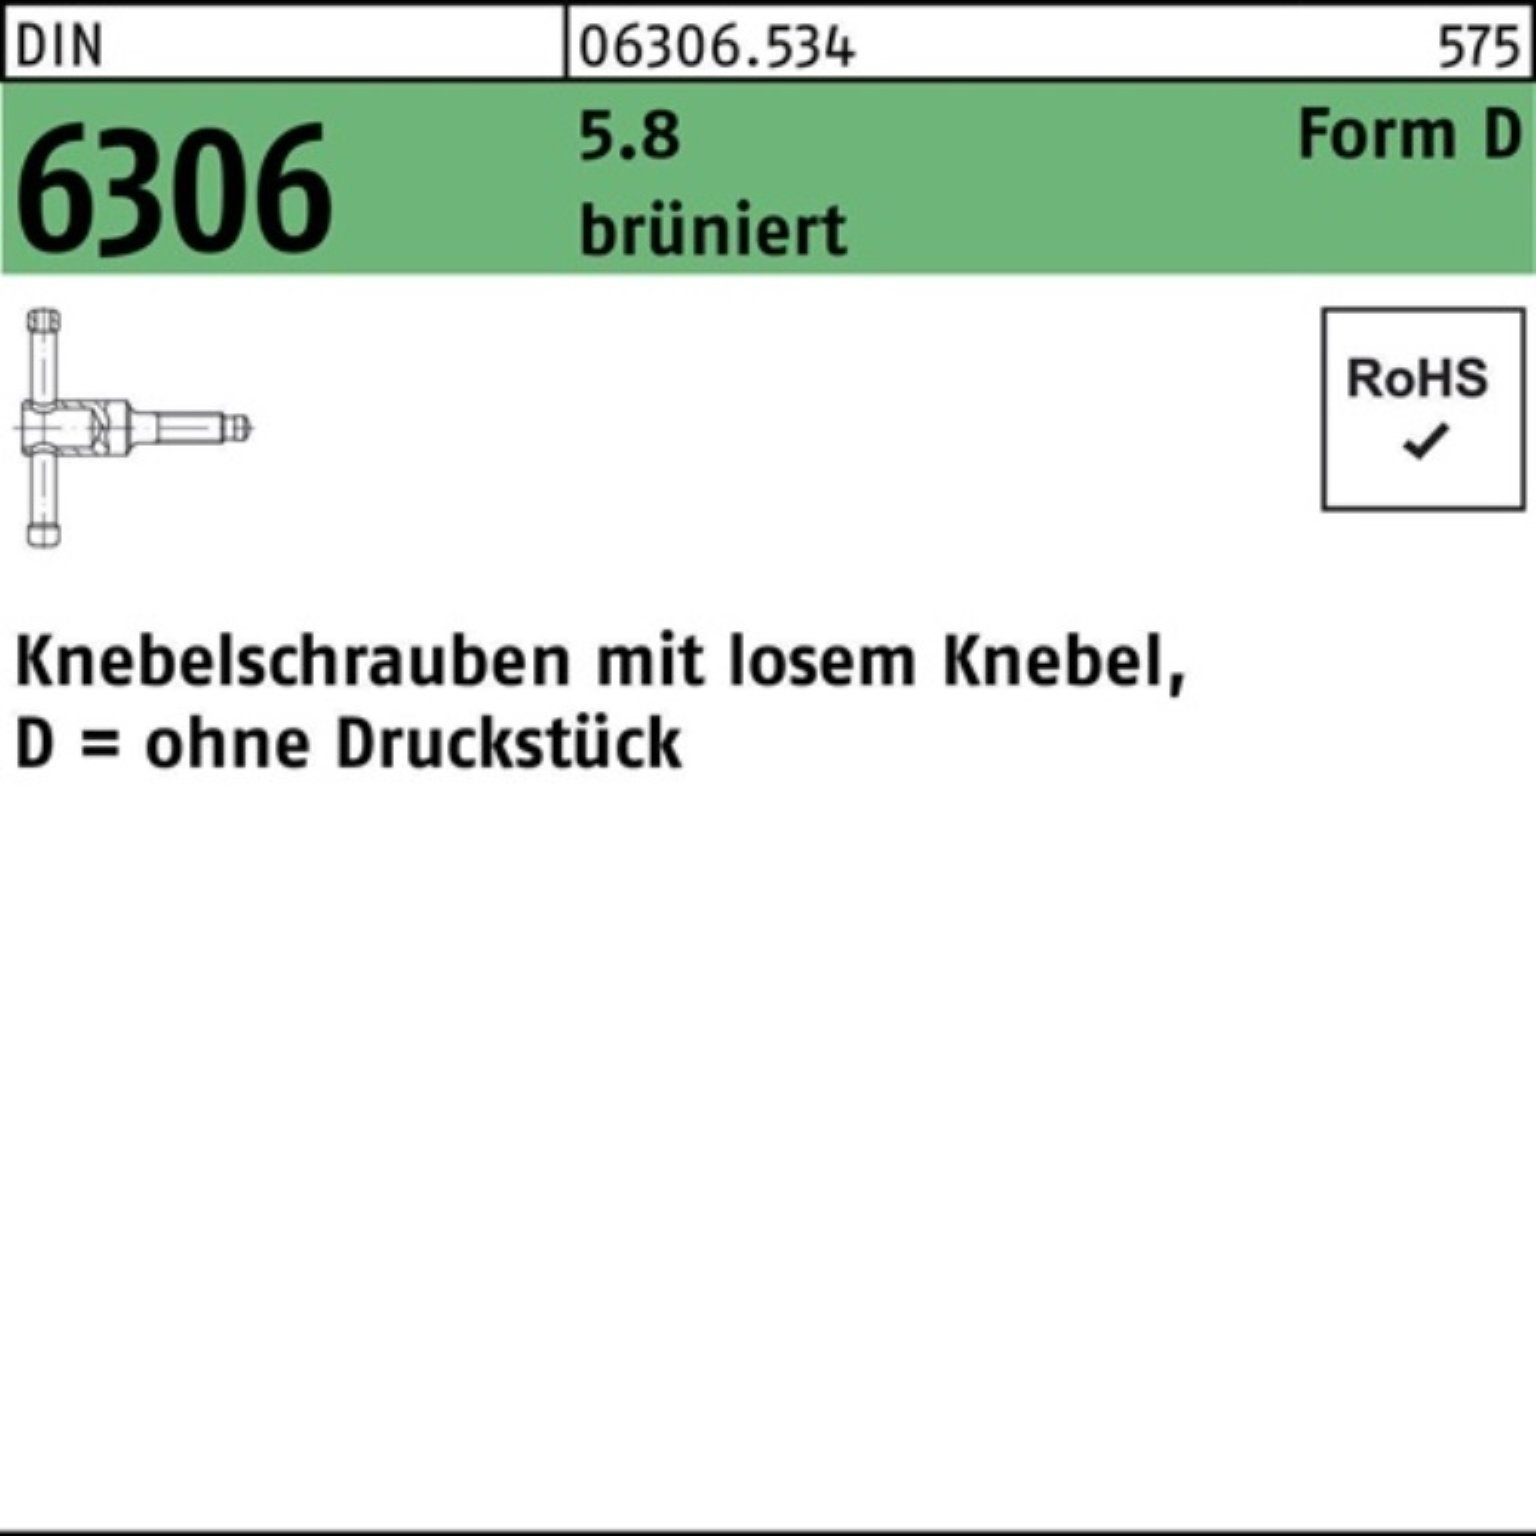 Reyher Schraube 100er Pack Knebelschraube DIN 6306 losen Knebel DM 20x 90 5.8 brünier